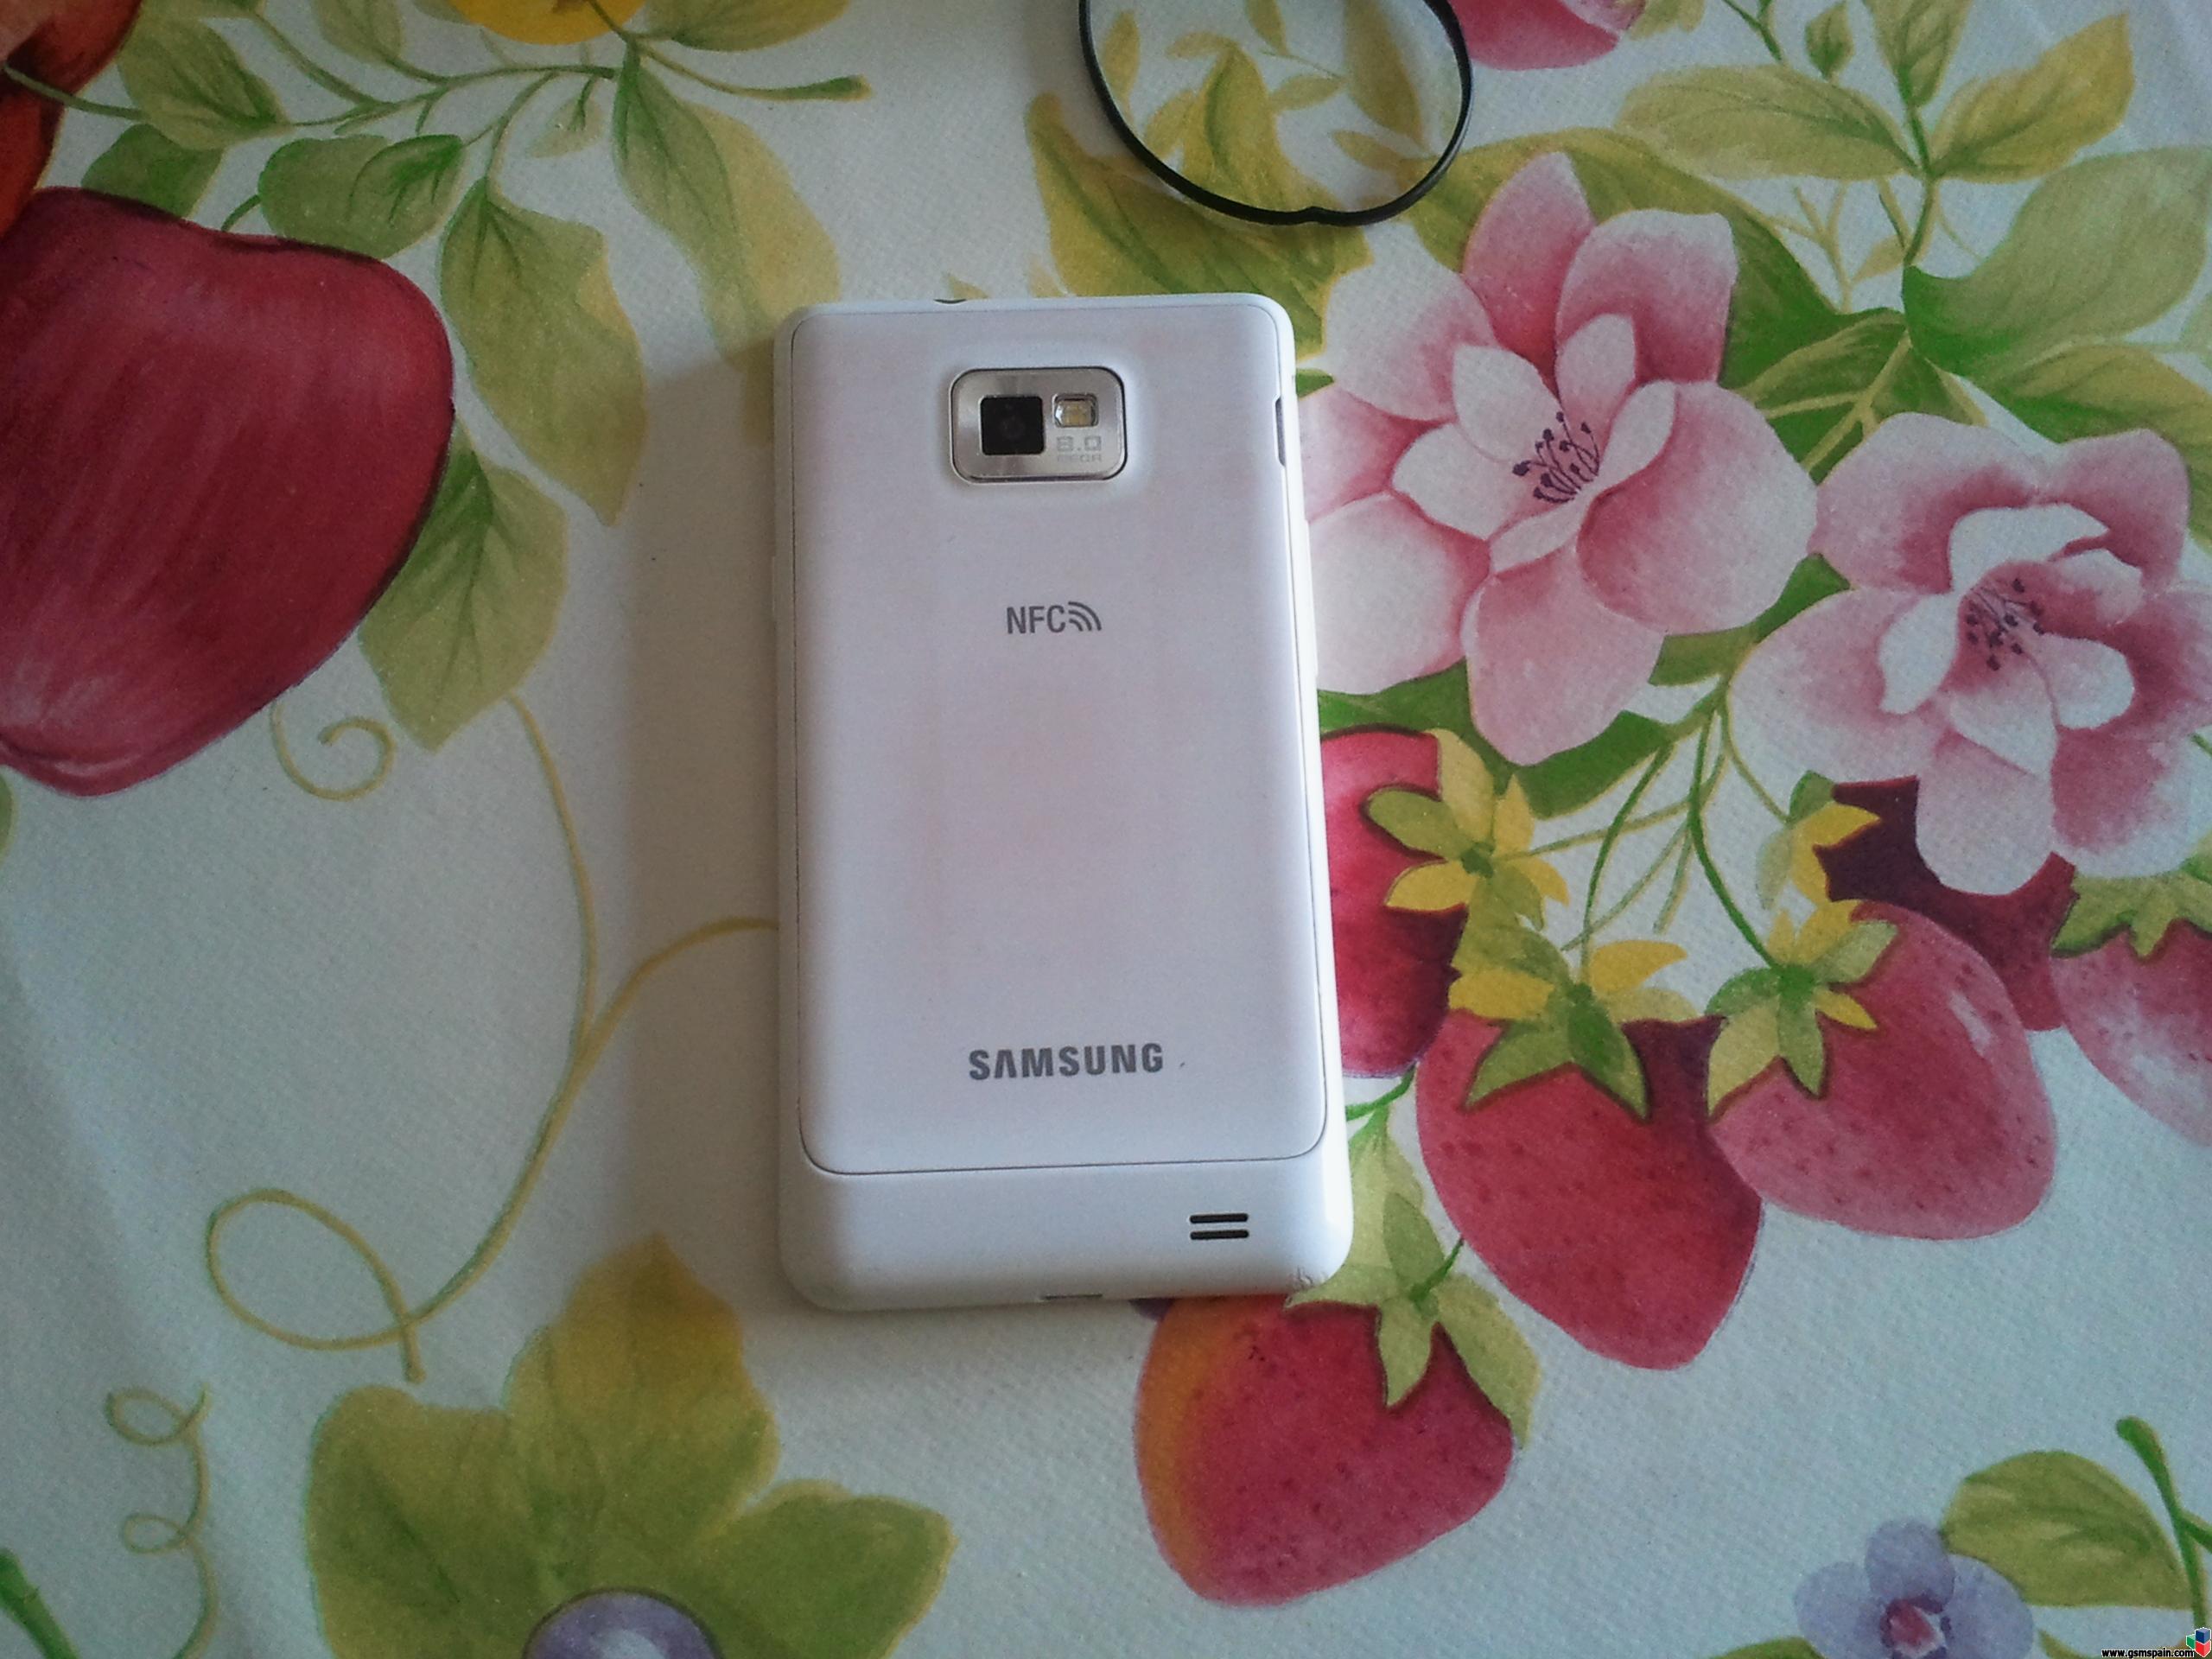 [VENDO] URGENTE, Vendo Samsung Galaxy S 2, Blanco con NFC 16GB muy barato.